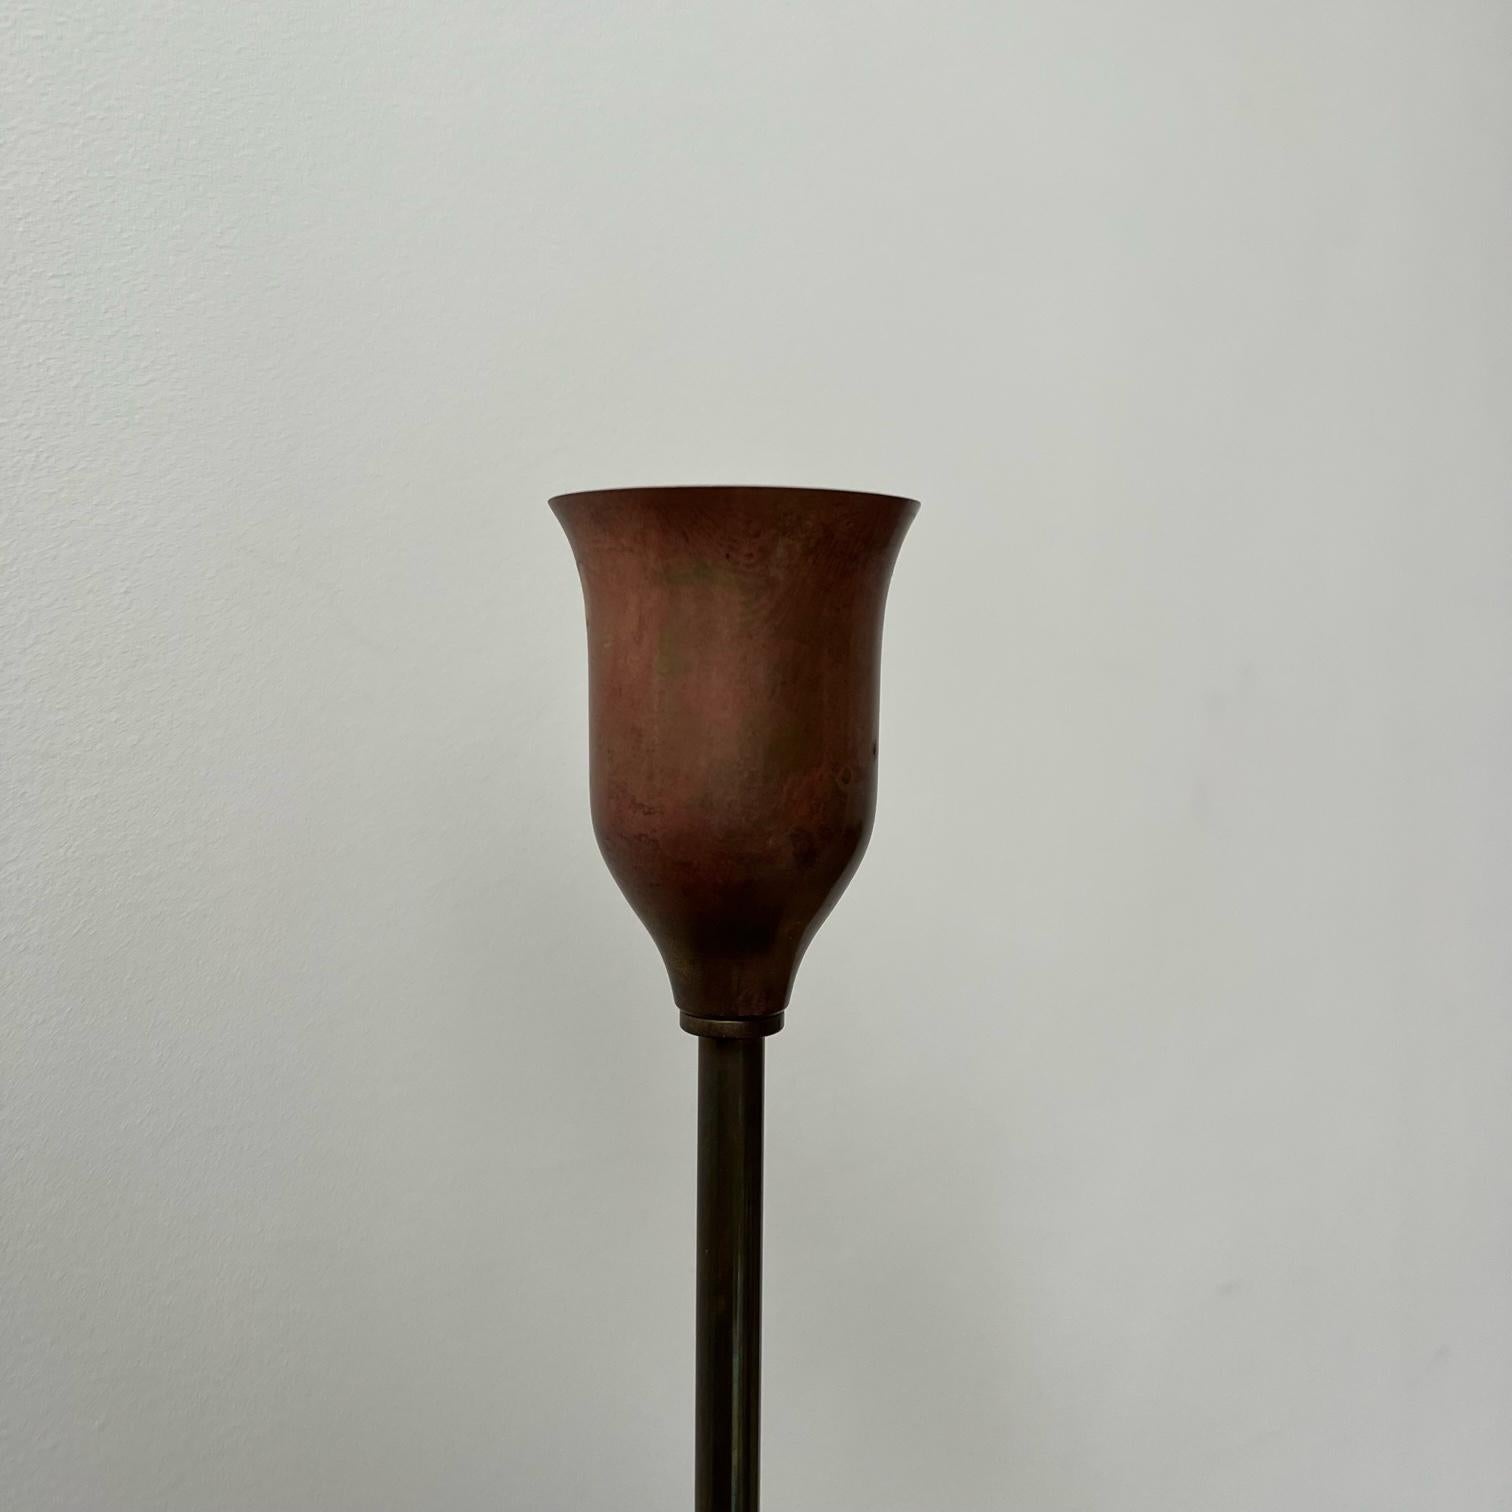 Une seule lampe de table par Josef Frank pour Firma Svenskt Tenn. 

Suède, c1938, probablement c1940s.

Laiton naturellement patiné, estampillé sur le dessous avec le numéro du modèle. 

Aucune nuance n'a été retenue mais elle peut être